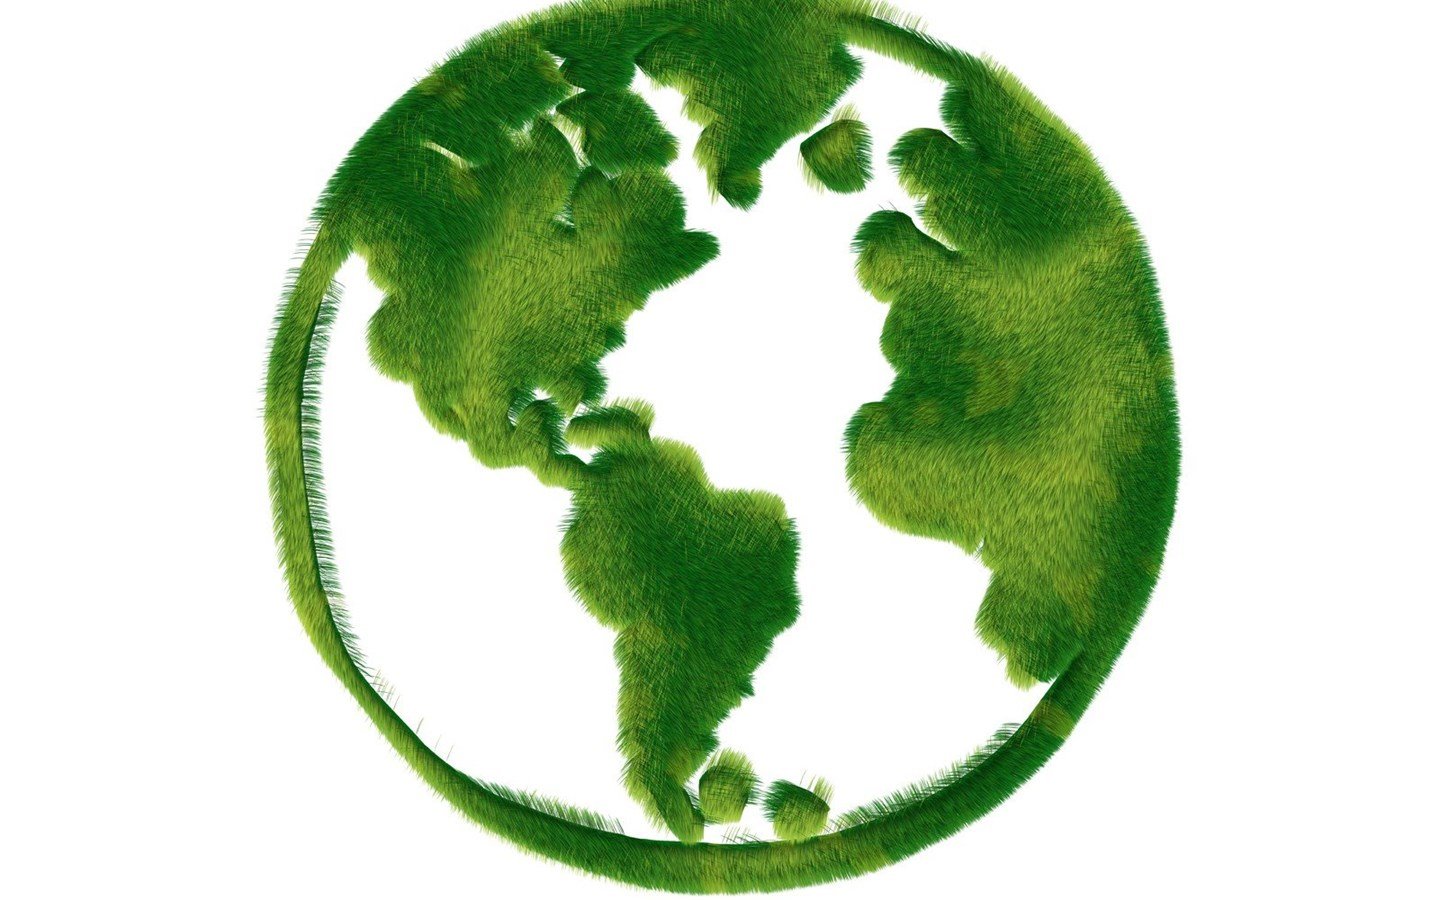 Символ Гринпис международной организации